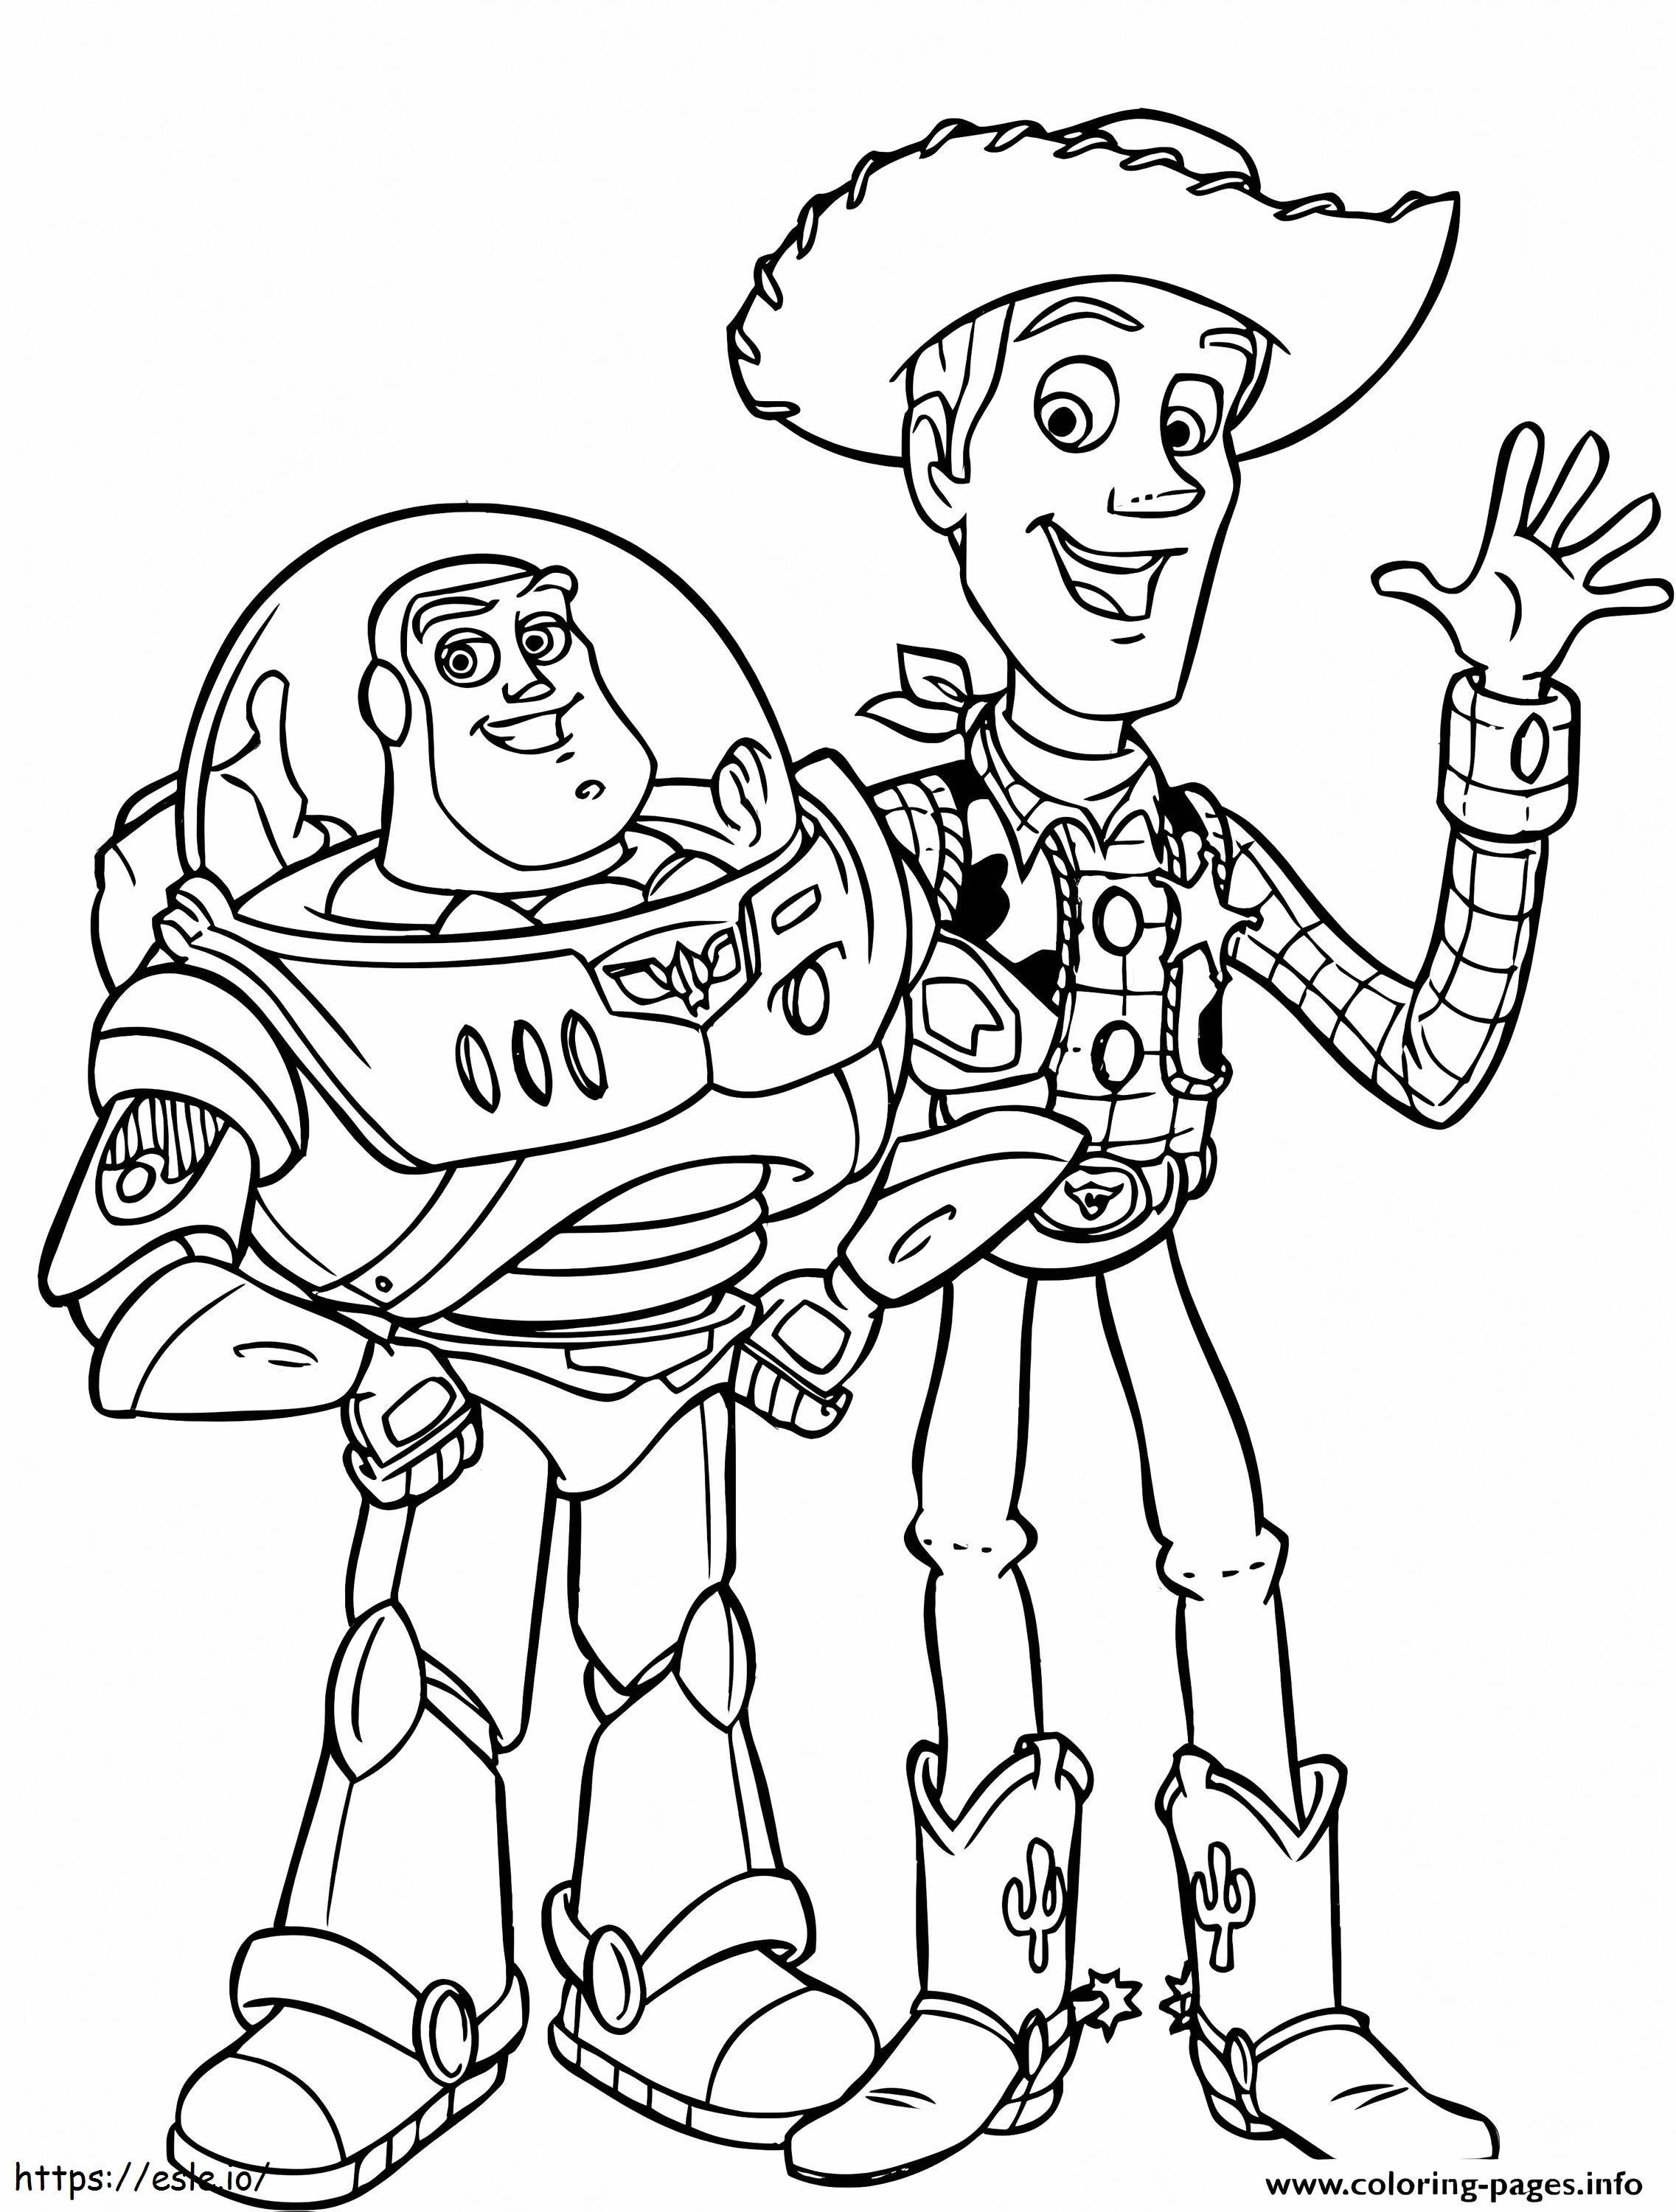 Woody e Buzz divertido para colorir